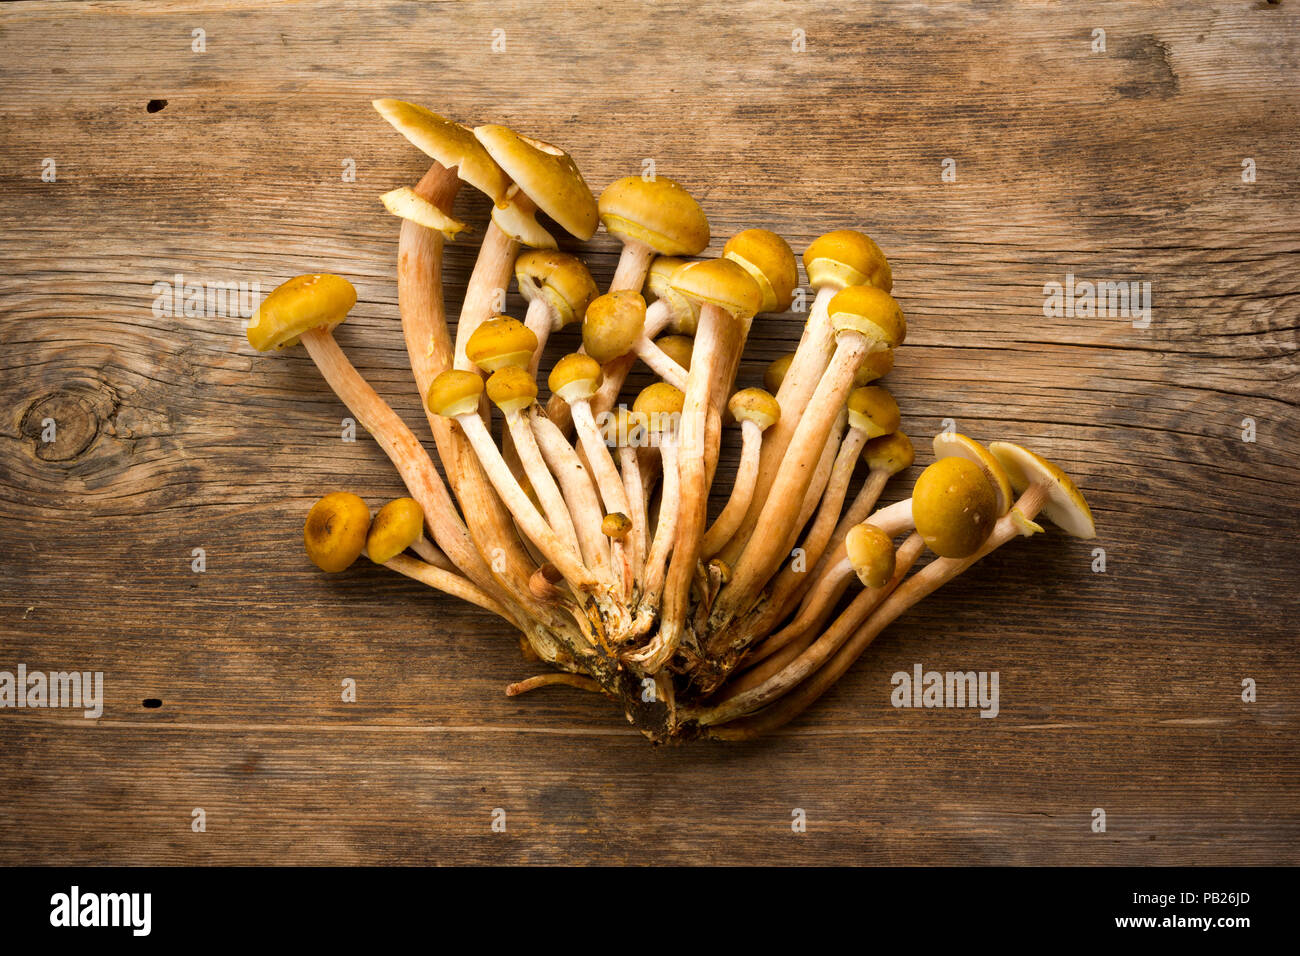 Materie giallo foresta commestibili funghi funghi su una vecchia tavola di legno con crepe. Closeup, vista da sopra Foto Stock